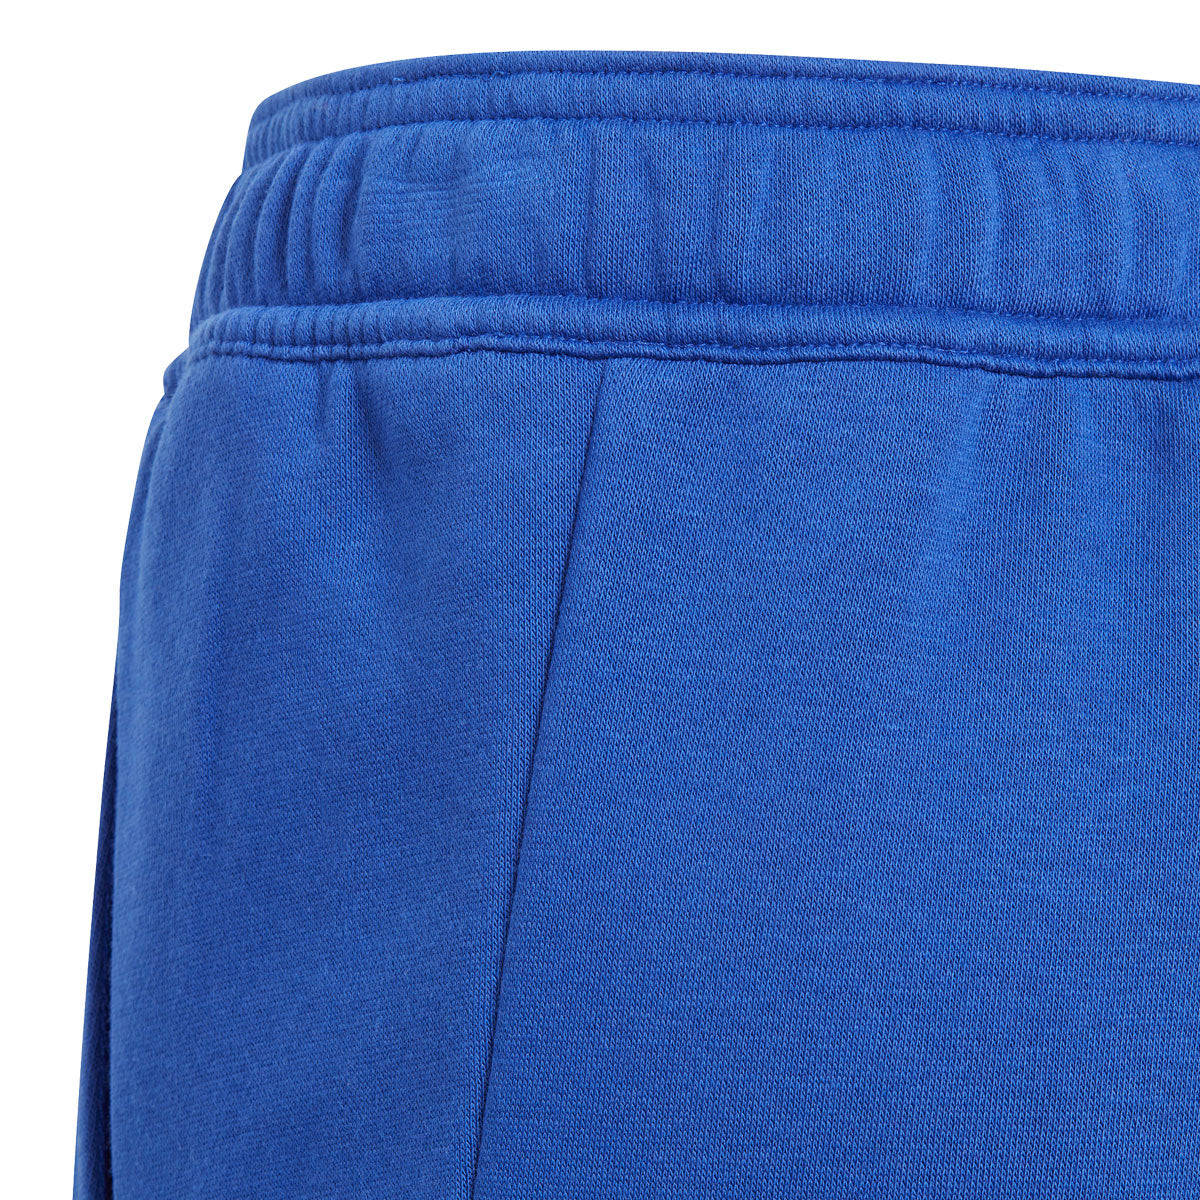 adidas 3 Stripe Tiberio Pants - Boys - Blue/White